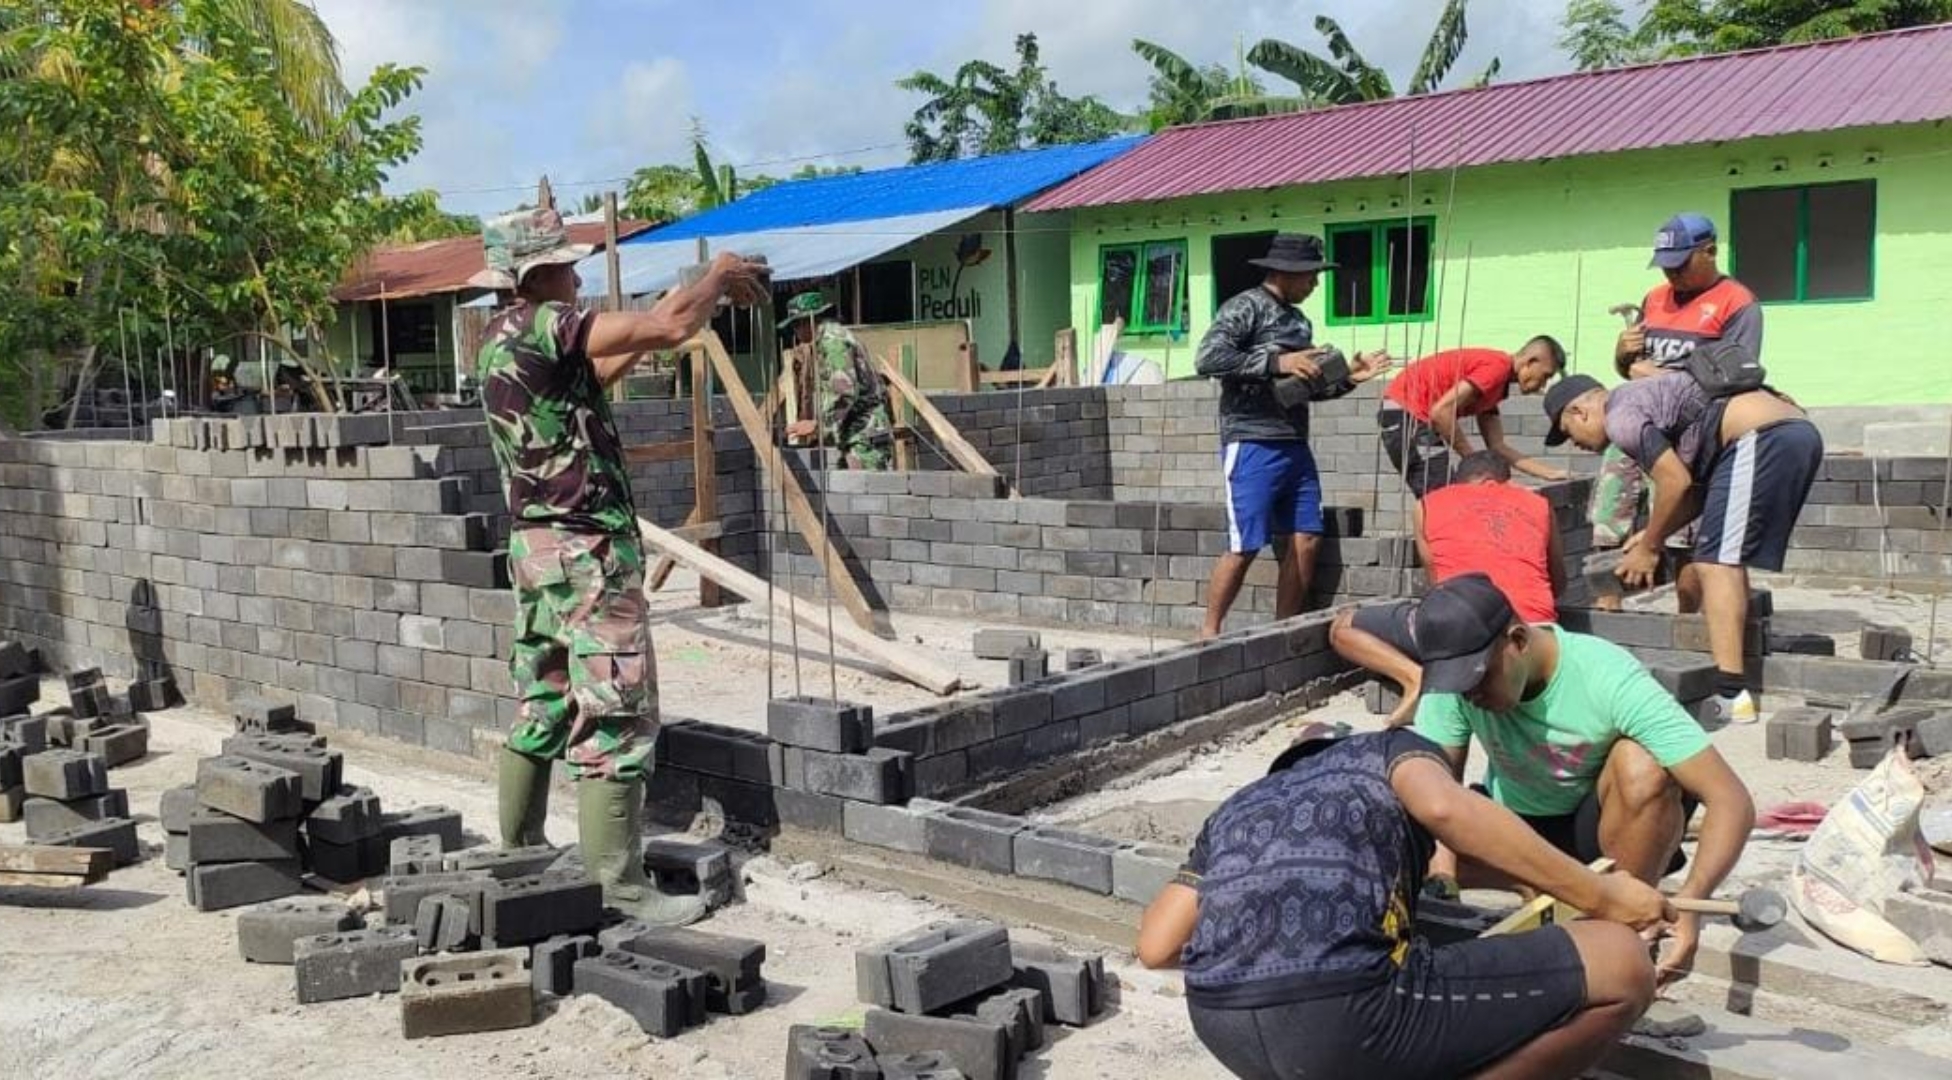 FABA diolah menjadi batako dan dimanfaatkan untuk membangun rumah bagi Prajurit TNI di Maumere, Nusa Tenggara Timur.